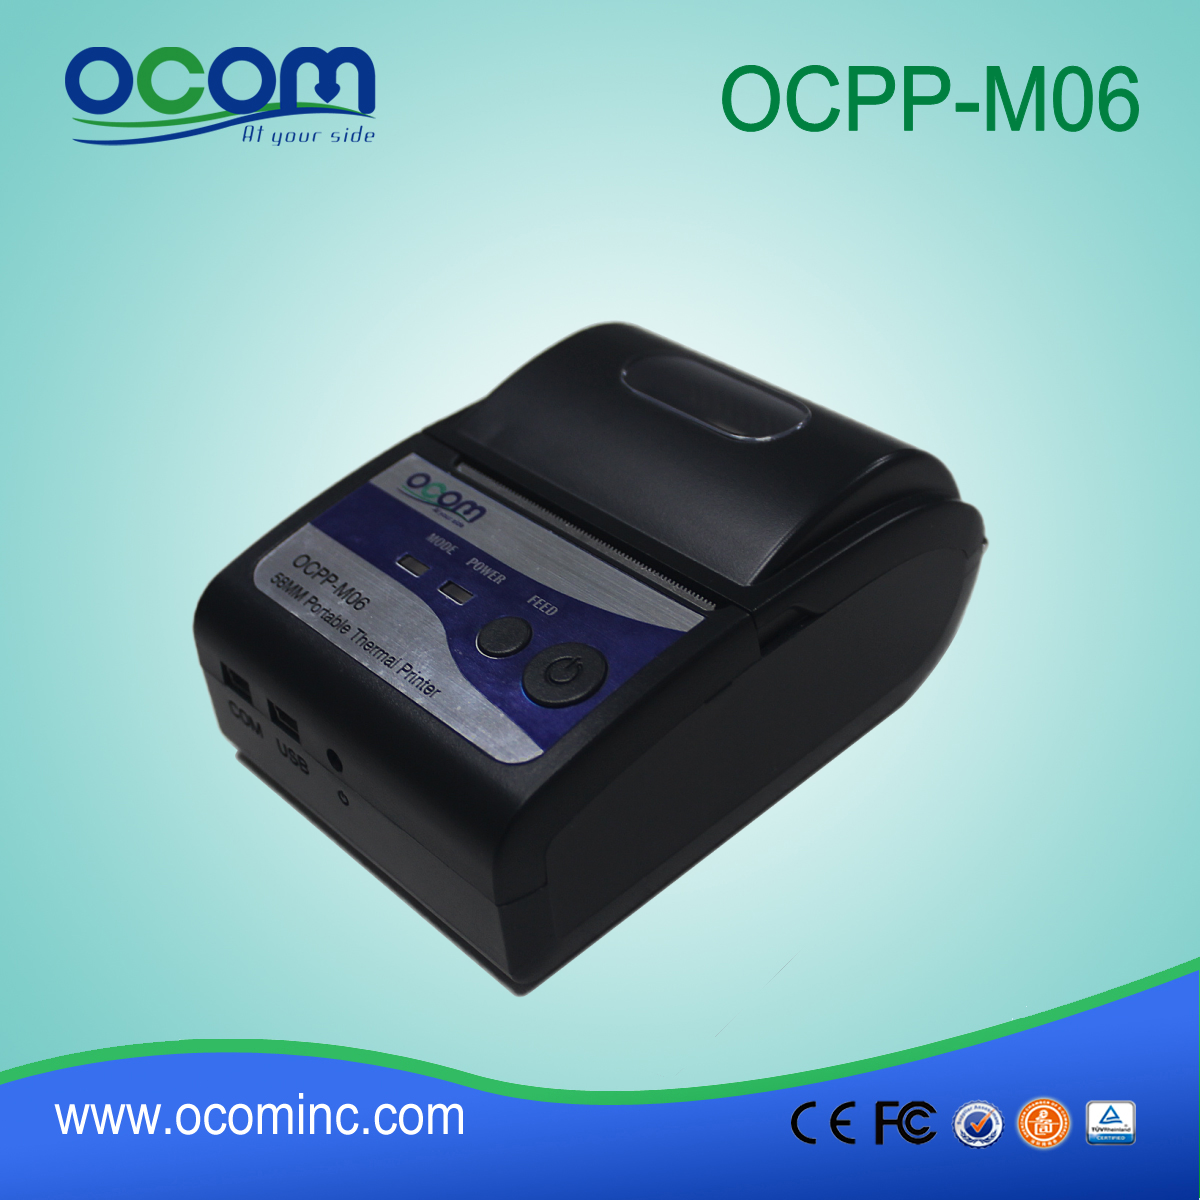 (OCPP-M06) Chiny fabryka OCOM 58mm termiczna mini bluetooth mini drukarki